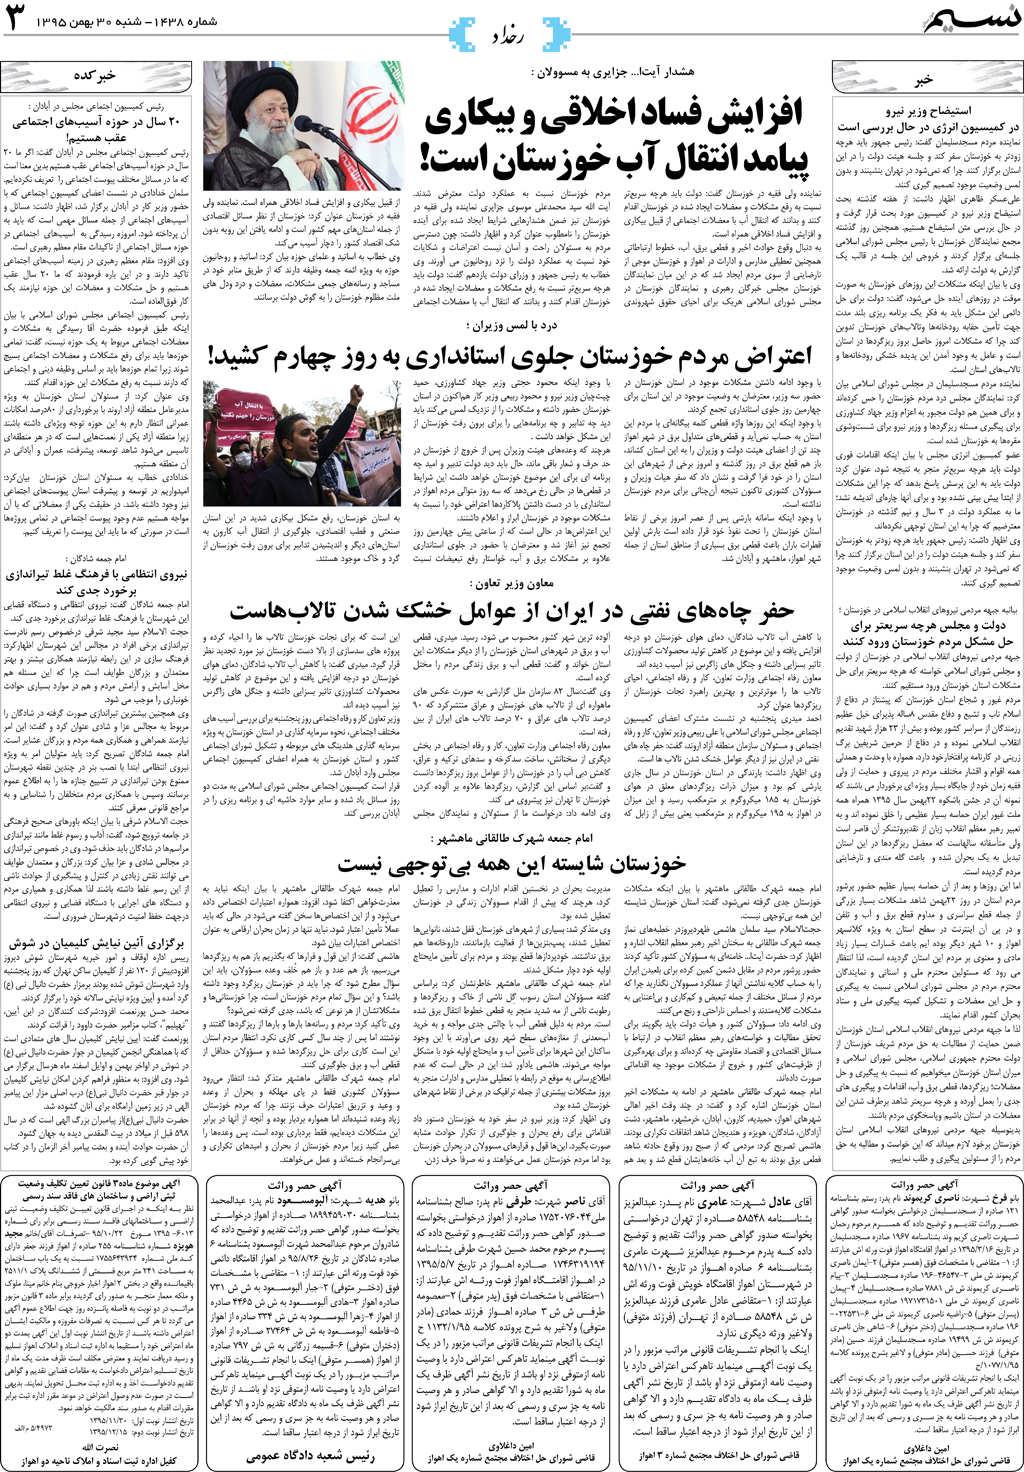 صفحه رخداد روزنامه نسیم شماره 1438